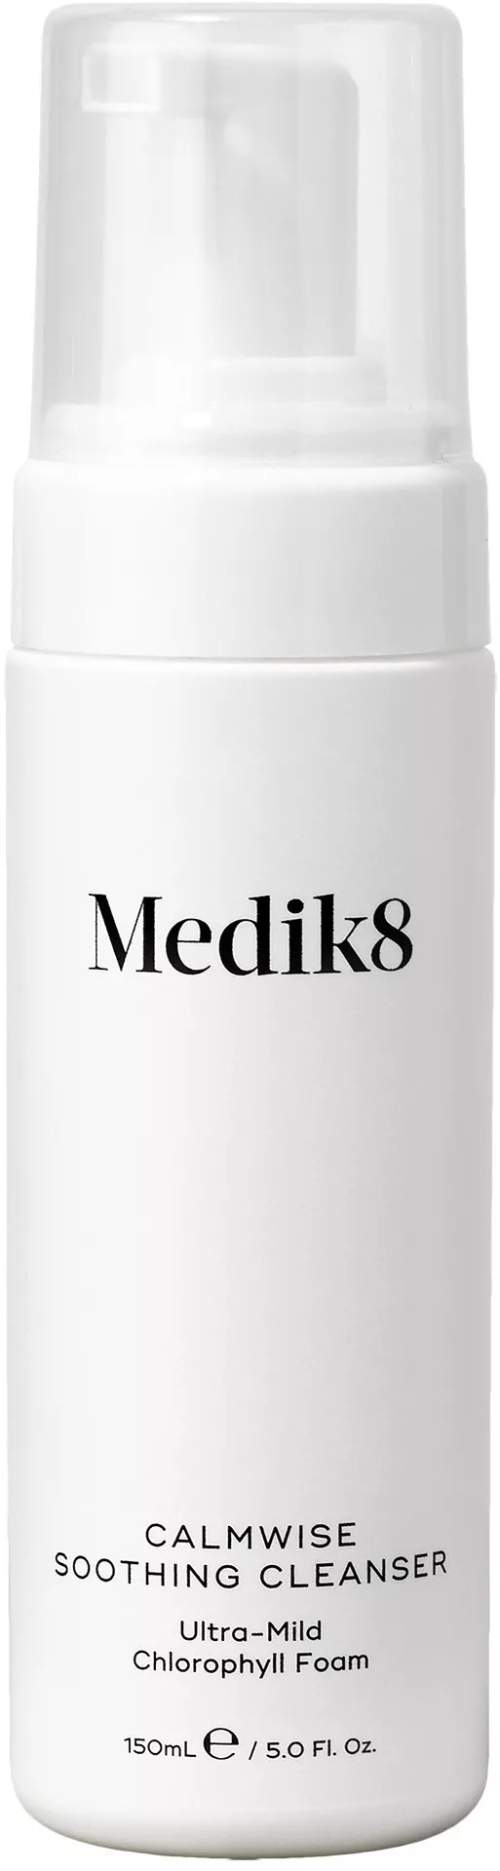 Medik8 Calmwise Soothing Cleanser - Ultra jemná čisticí pěna pro citlivou pleť 150 ml